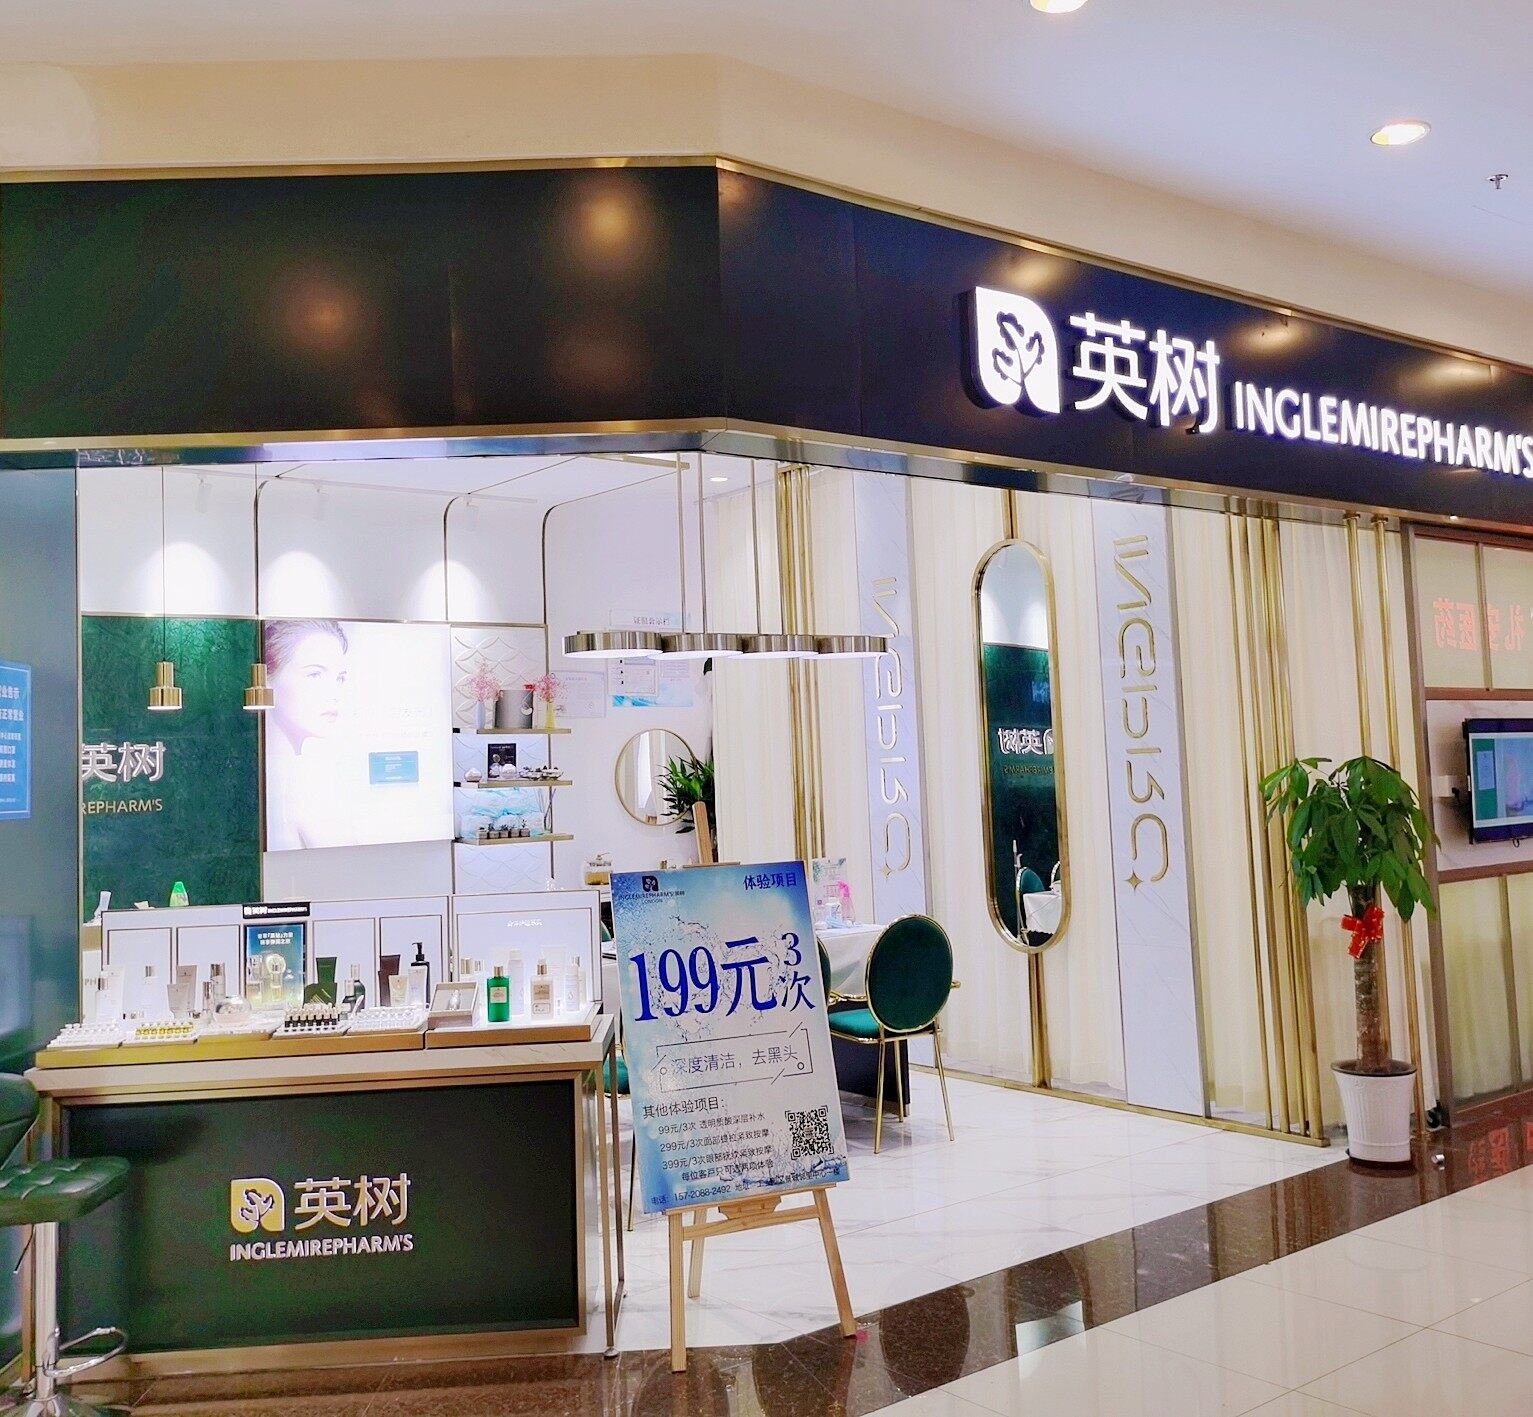 苏州工业园区陈之李化妆品店logo